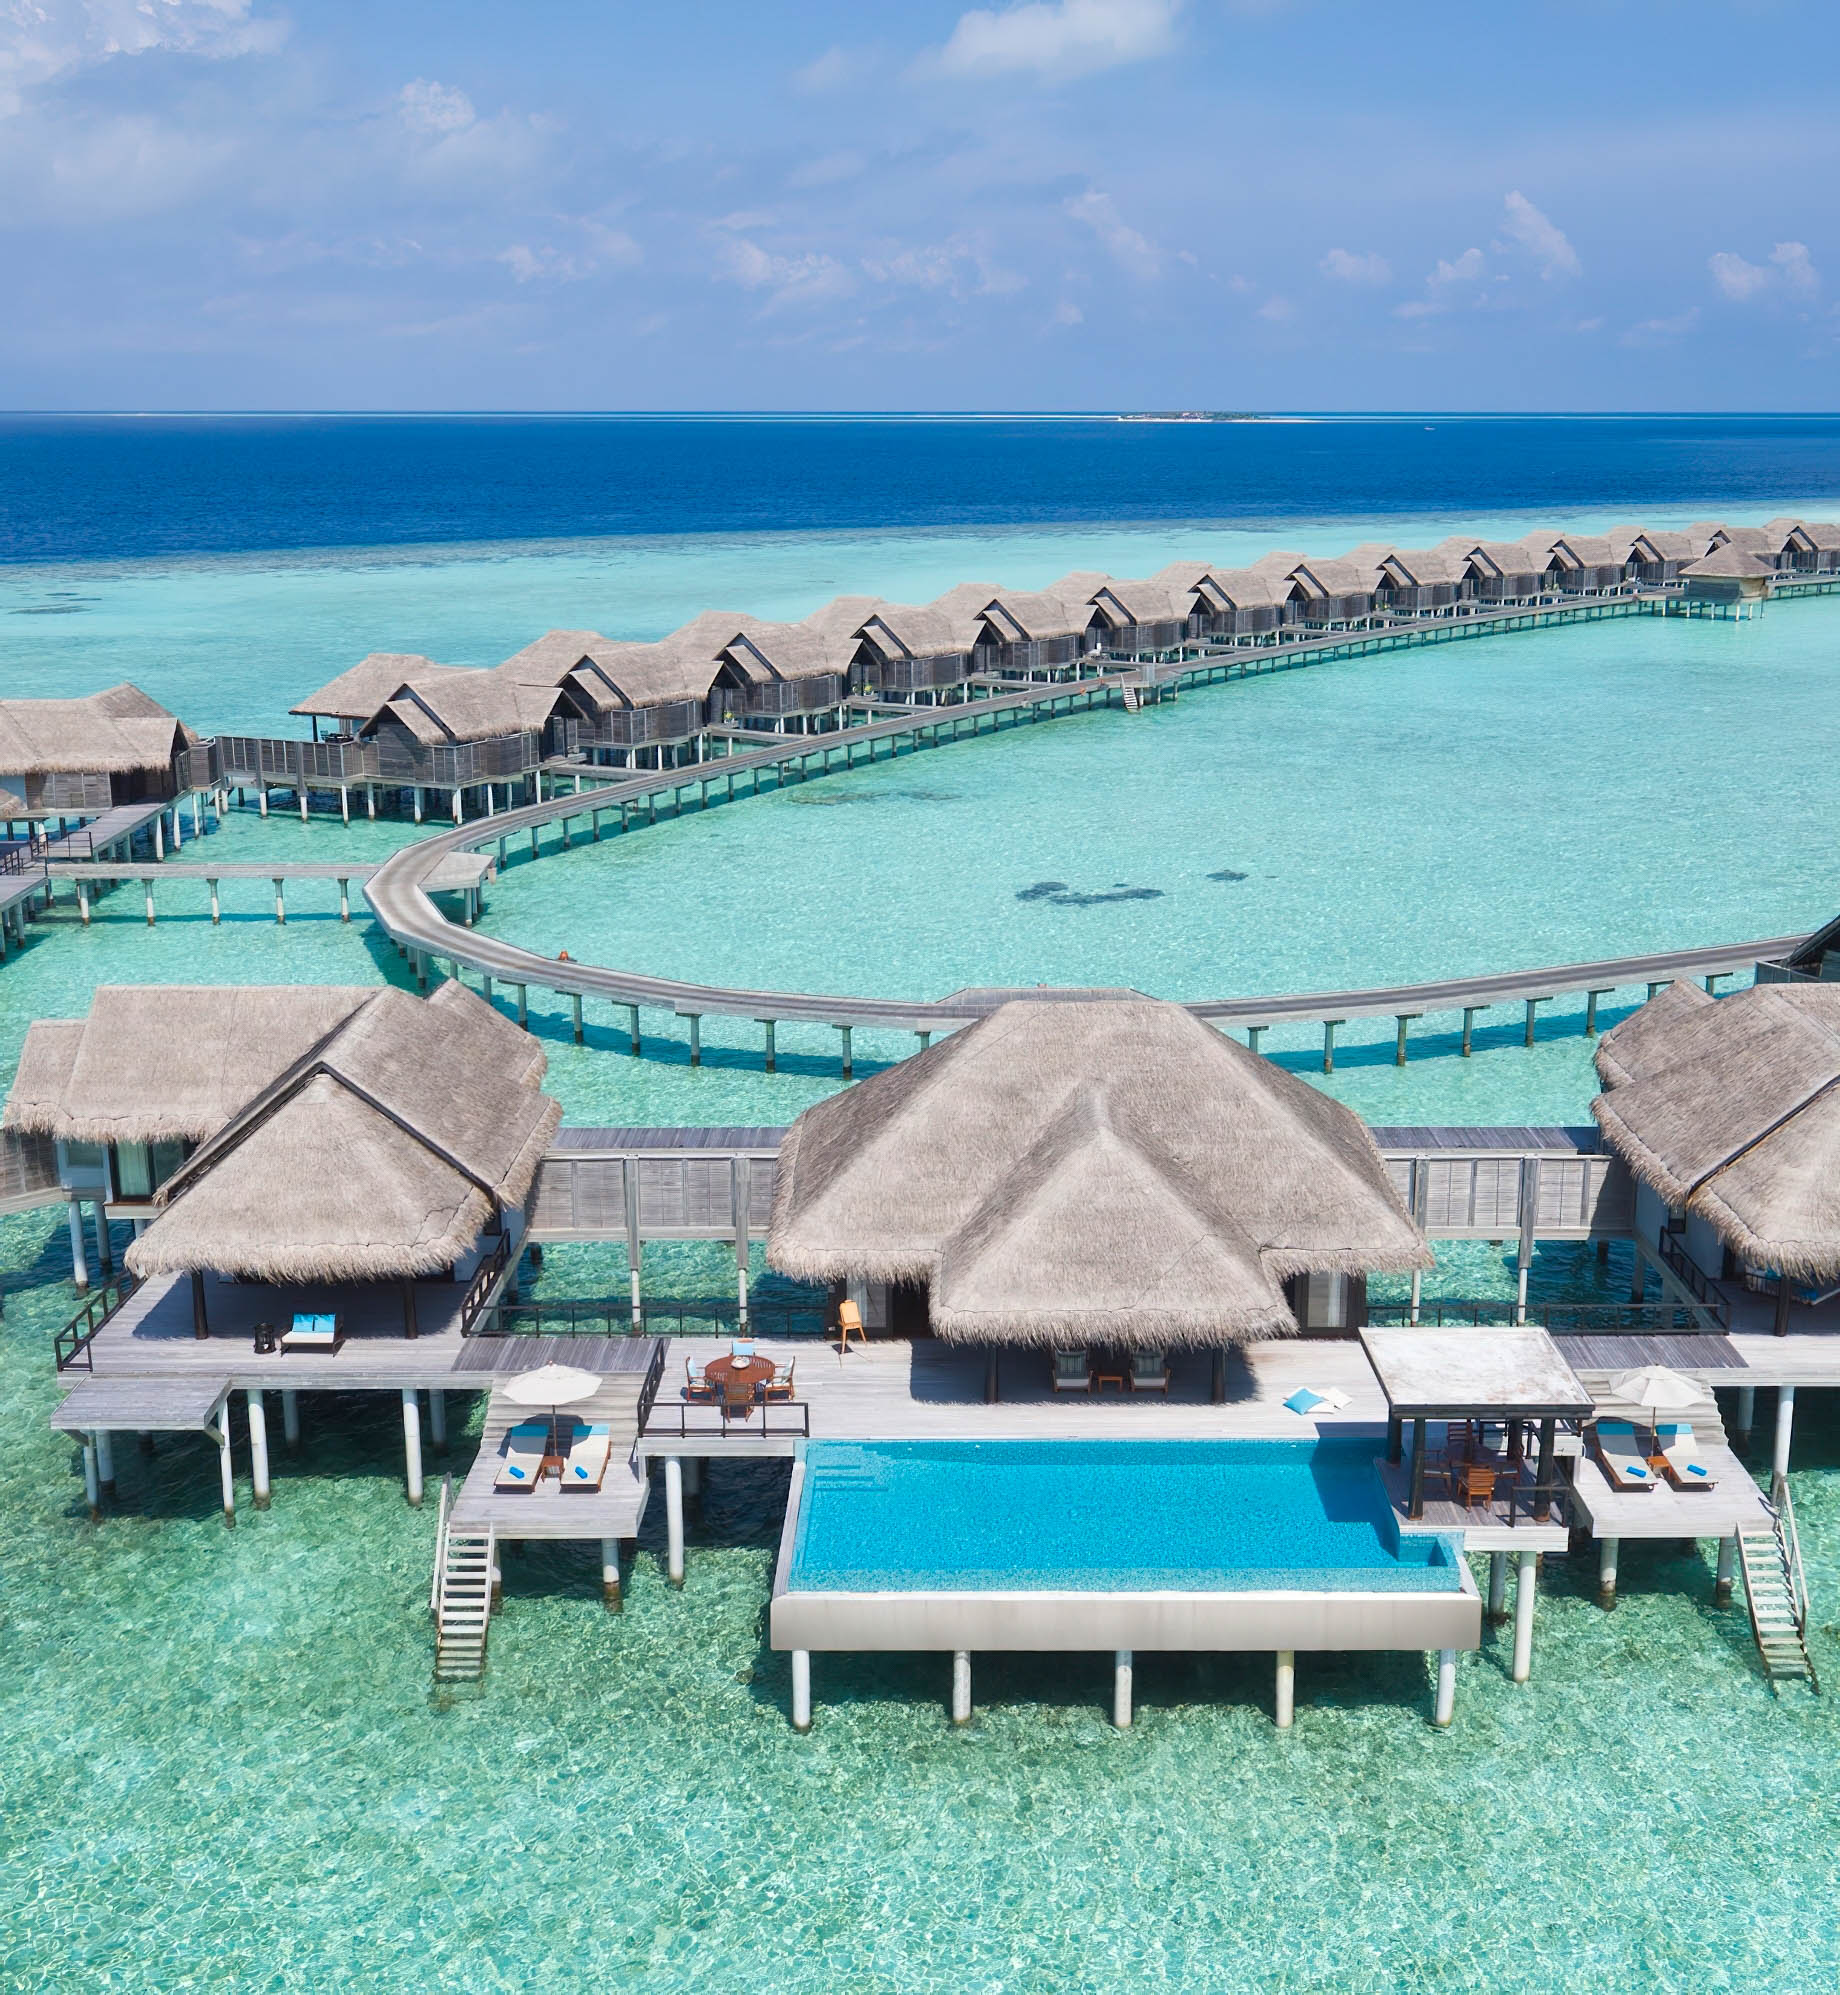 Anantara Kihavah Maldives Villas Resort – Baa Atoll, Maldives – Two Bedroom Sunset Over Water Pool Residence Aerial View